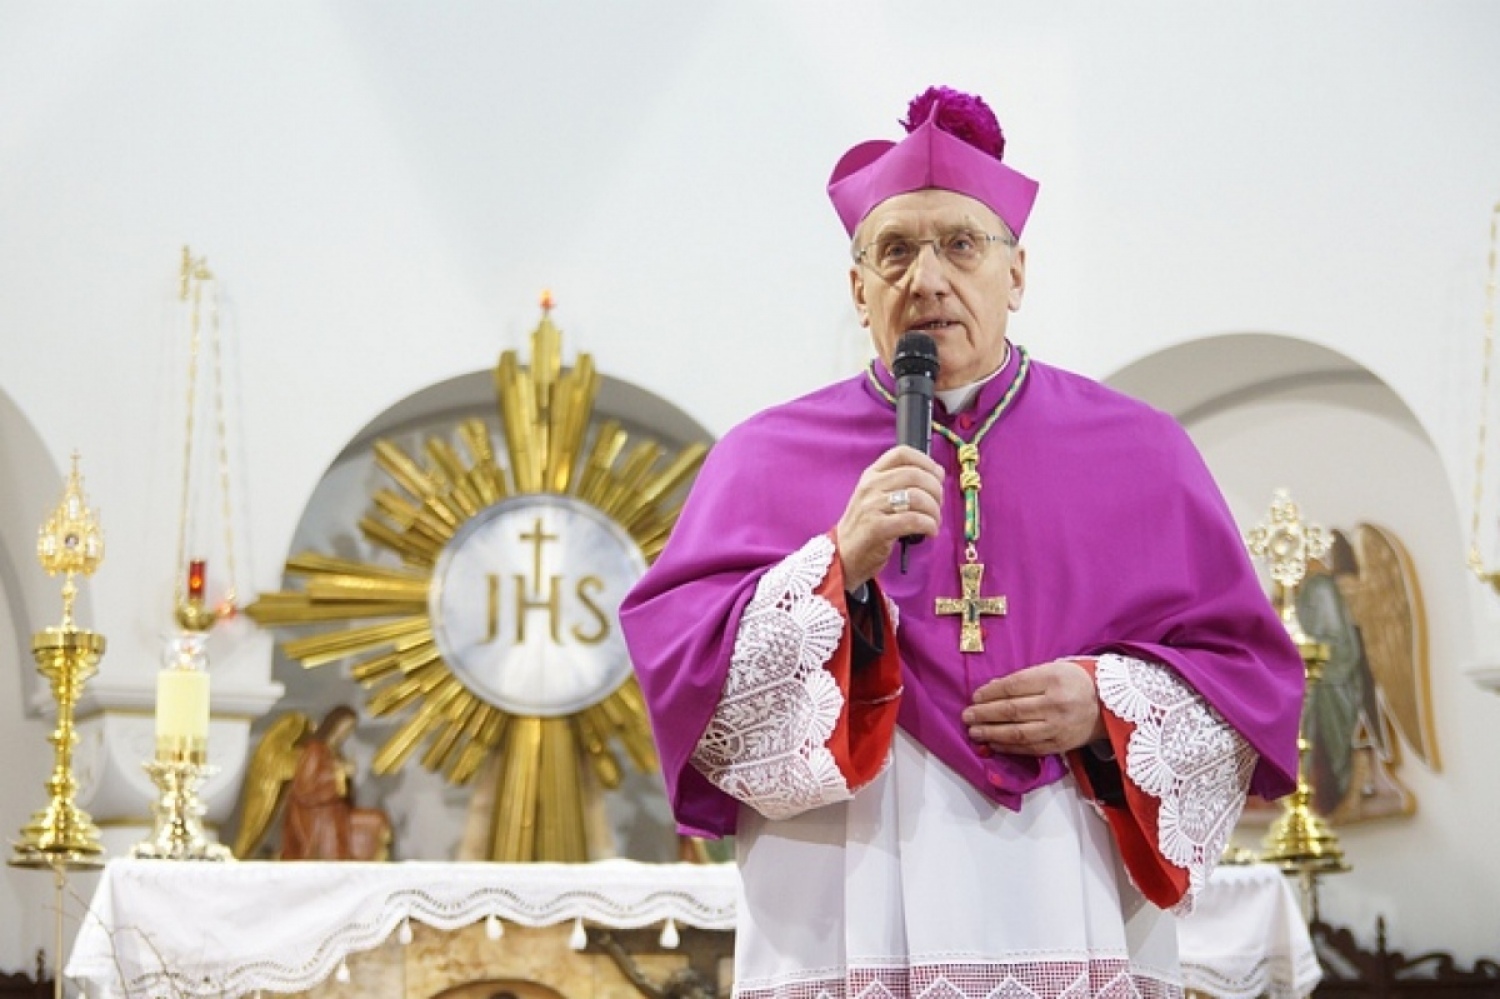 МВД признало паспорт архиепископа Кондрусевича недействительным